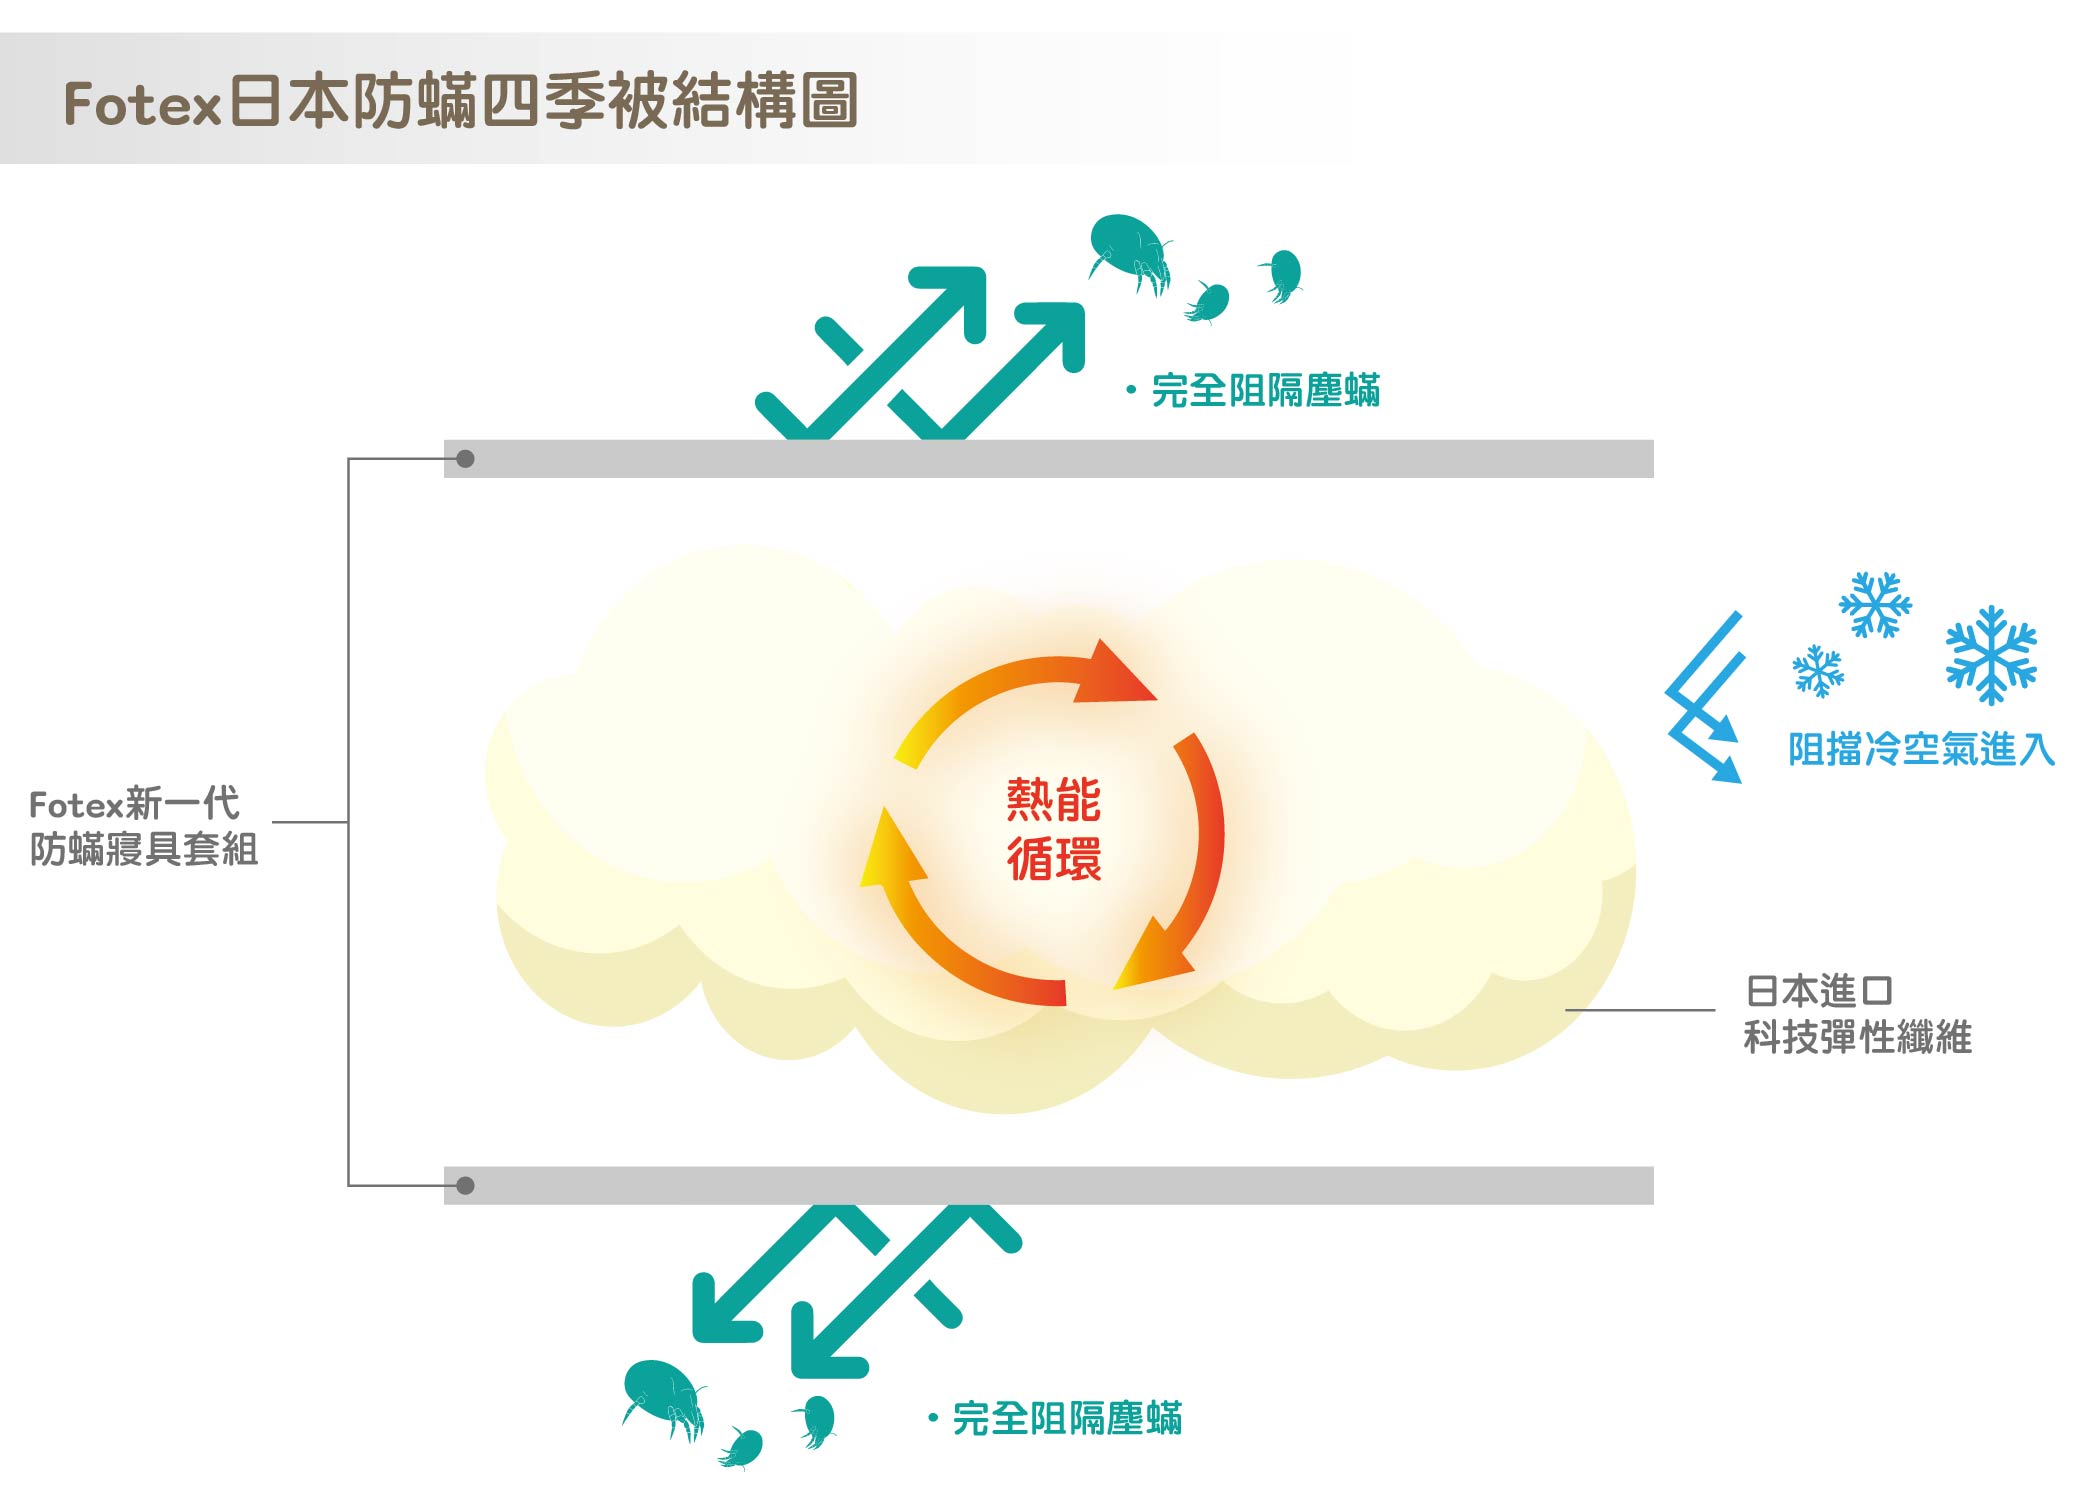 日本防蟎棉被防蹣和保暖原理圖,熱循環能自然形成保暖層,側身或低溫時,即可釋放熱能還原,讓身體保持恆溫